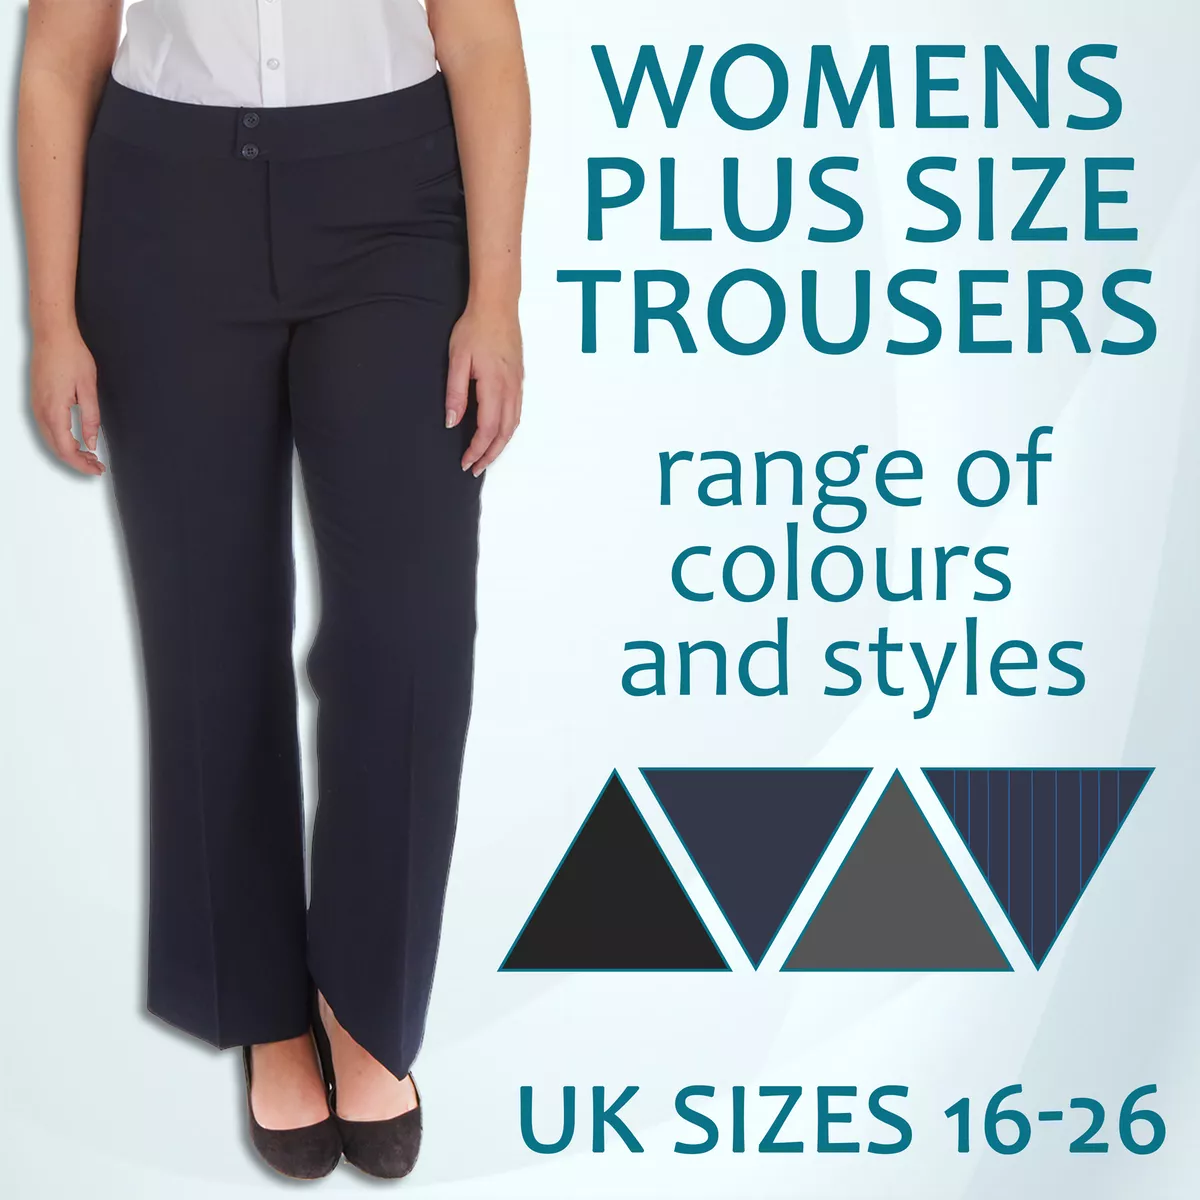 Women's Plus Size Trousers